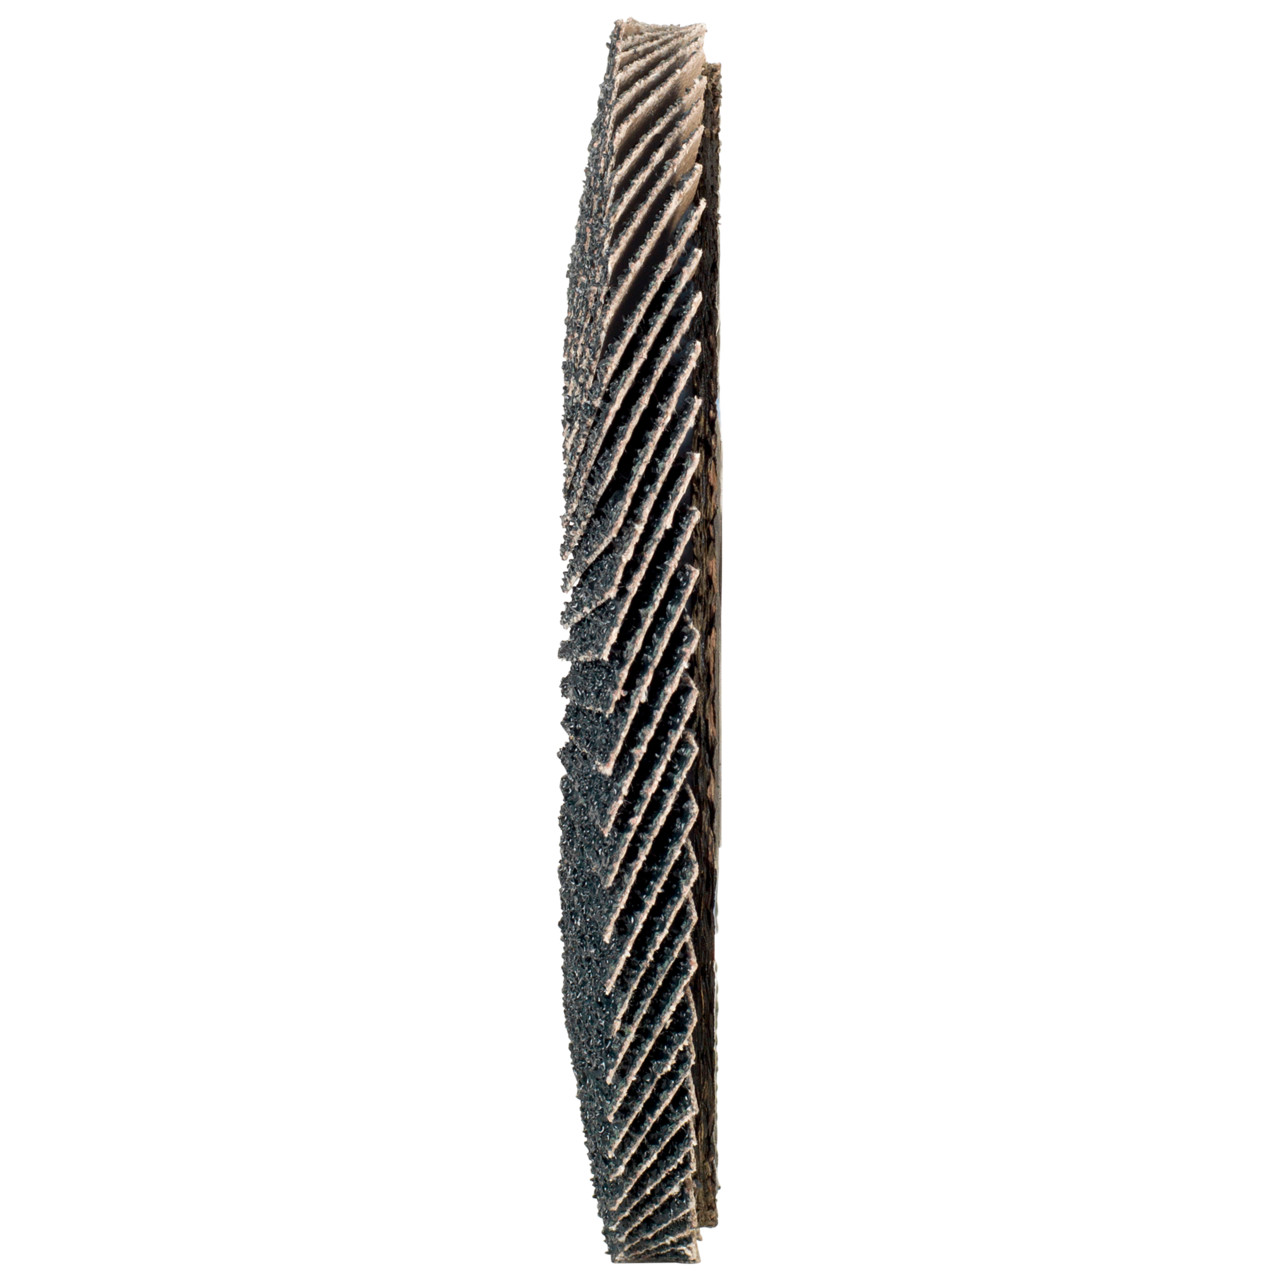 Rondella dentata Tyrolit DxH 178x22.2 2in1 per acciaio e acciaio inox, P120, forma: 27A - versione a gomito (versione con corpo portante in fibra di vetro), Art. 643807